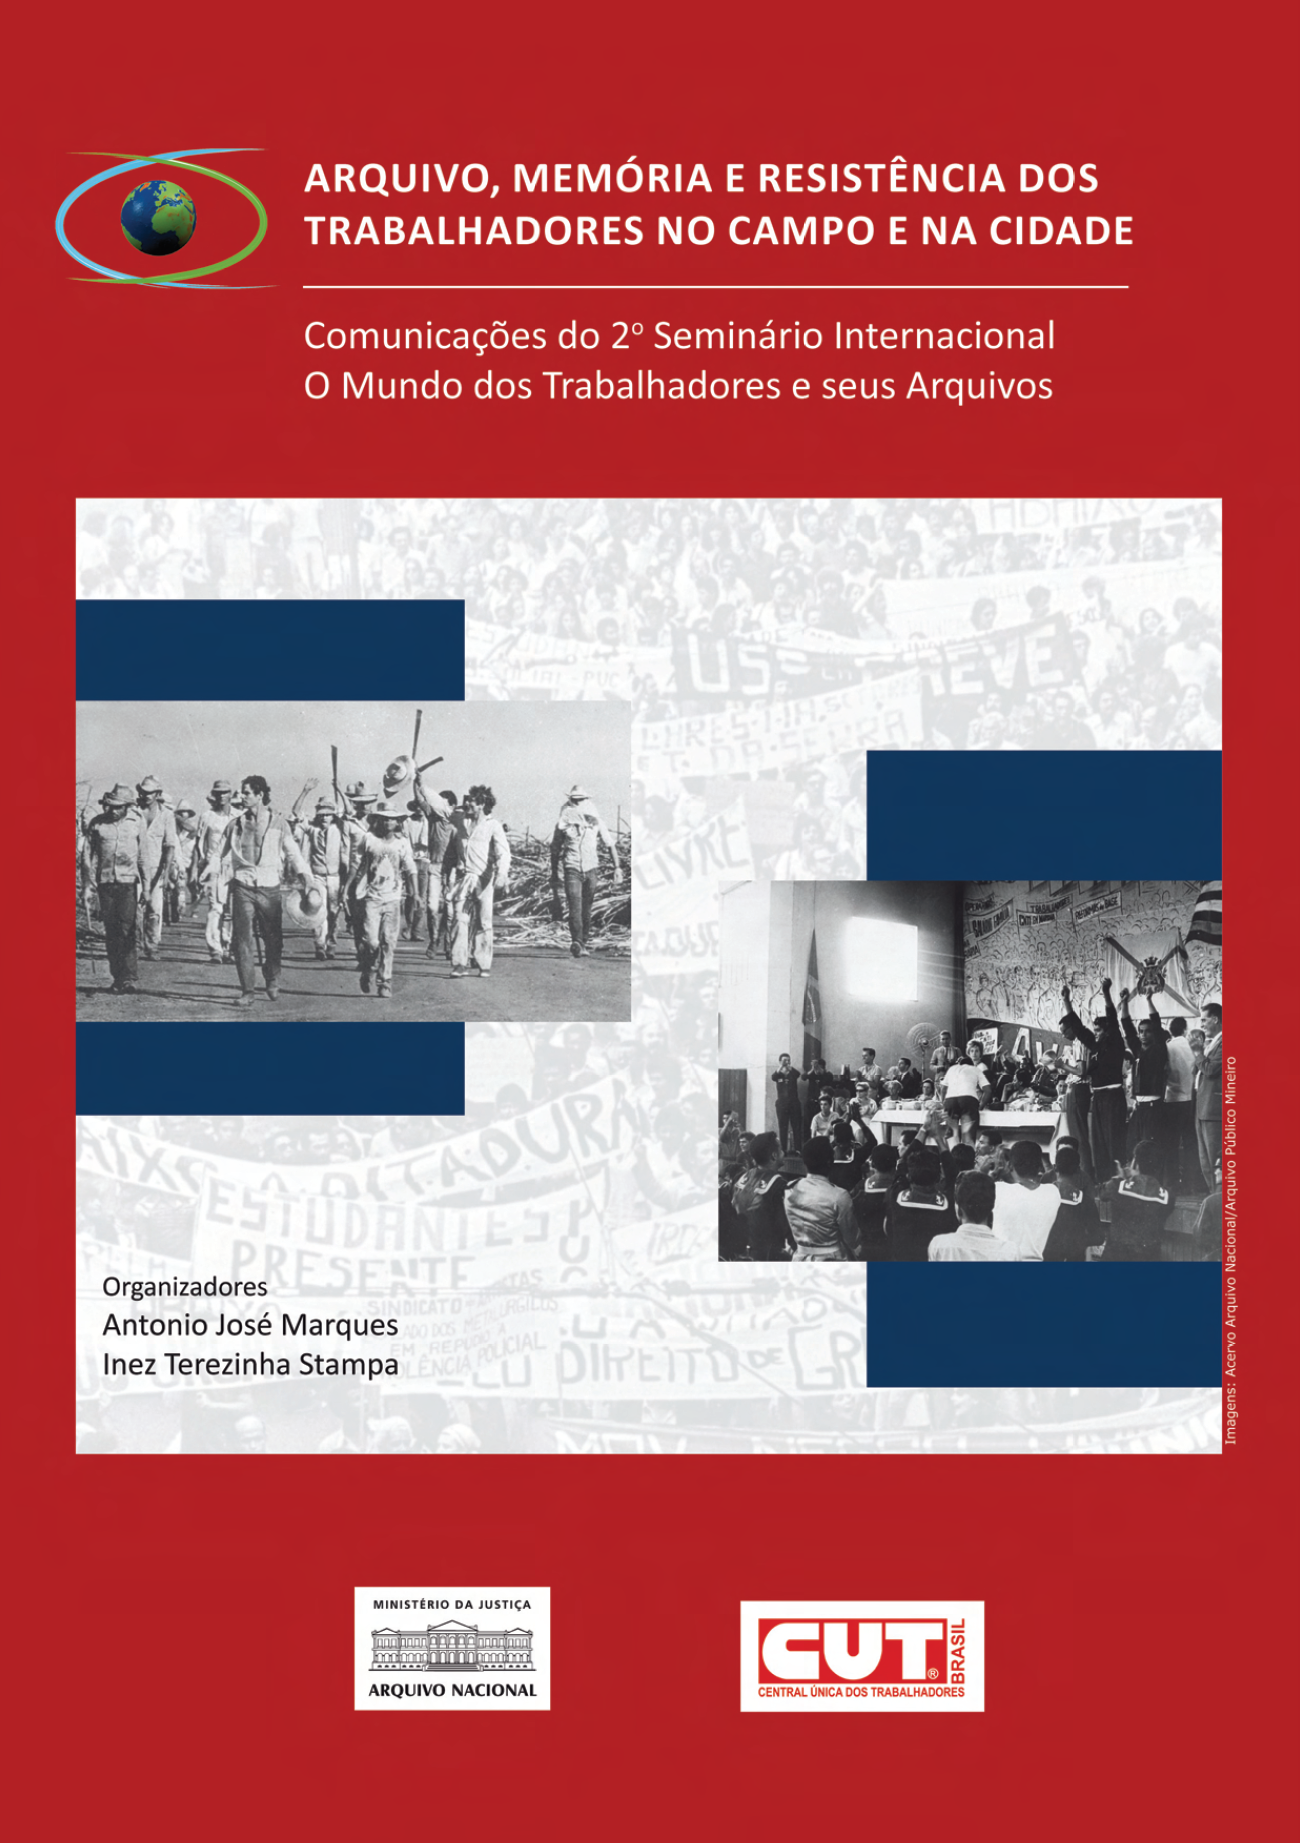 Arquivo, memória e resistência: Comunicações do 2º Seminário Internacional  O mundo dos trabalhadores e seus arquivos